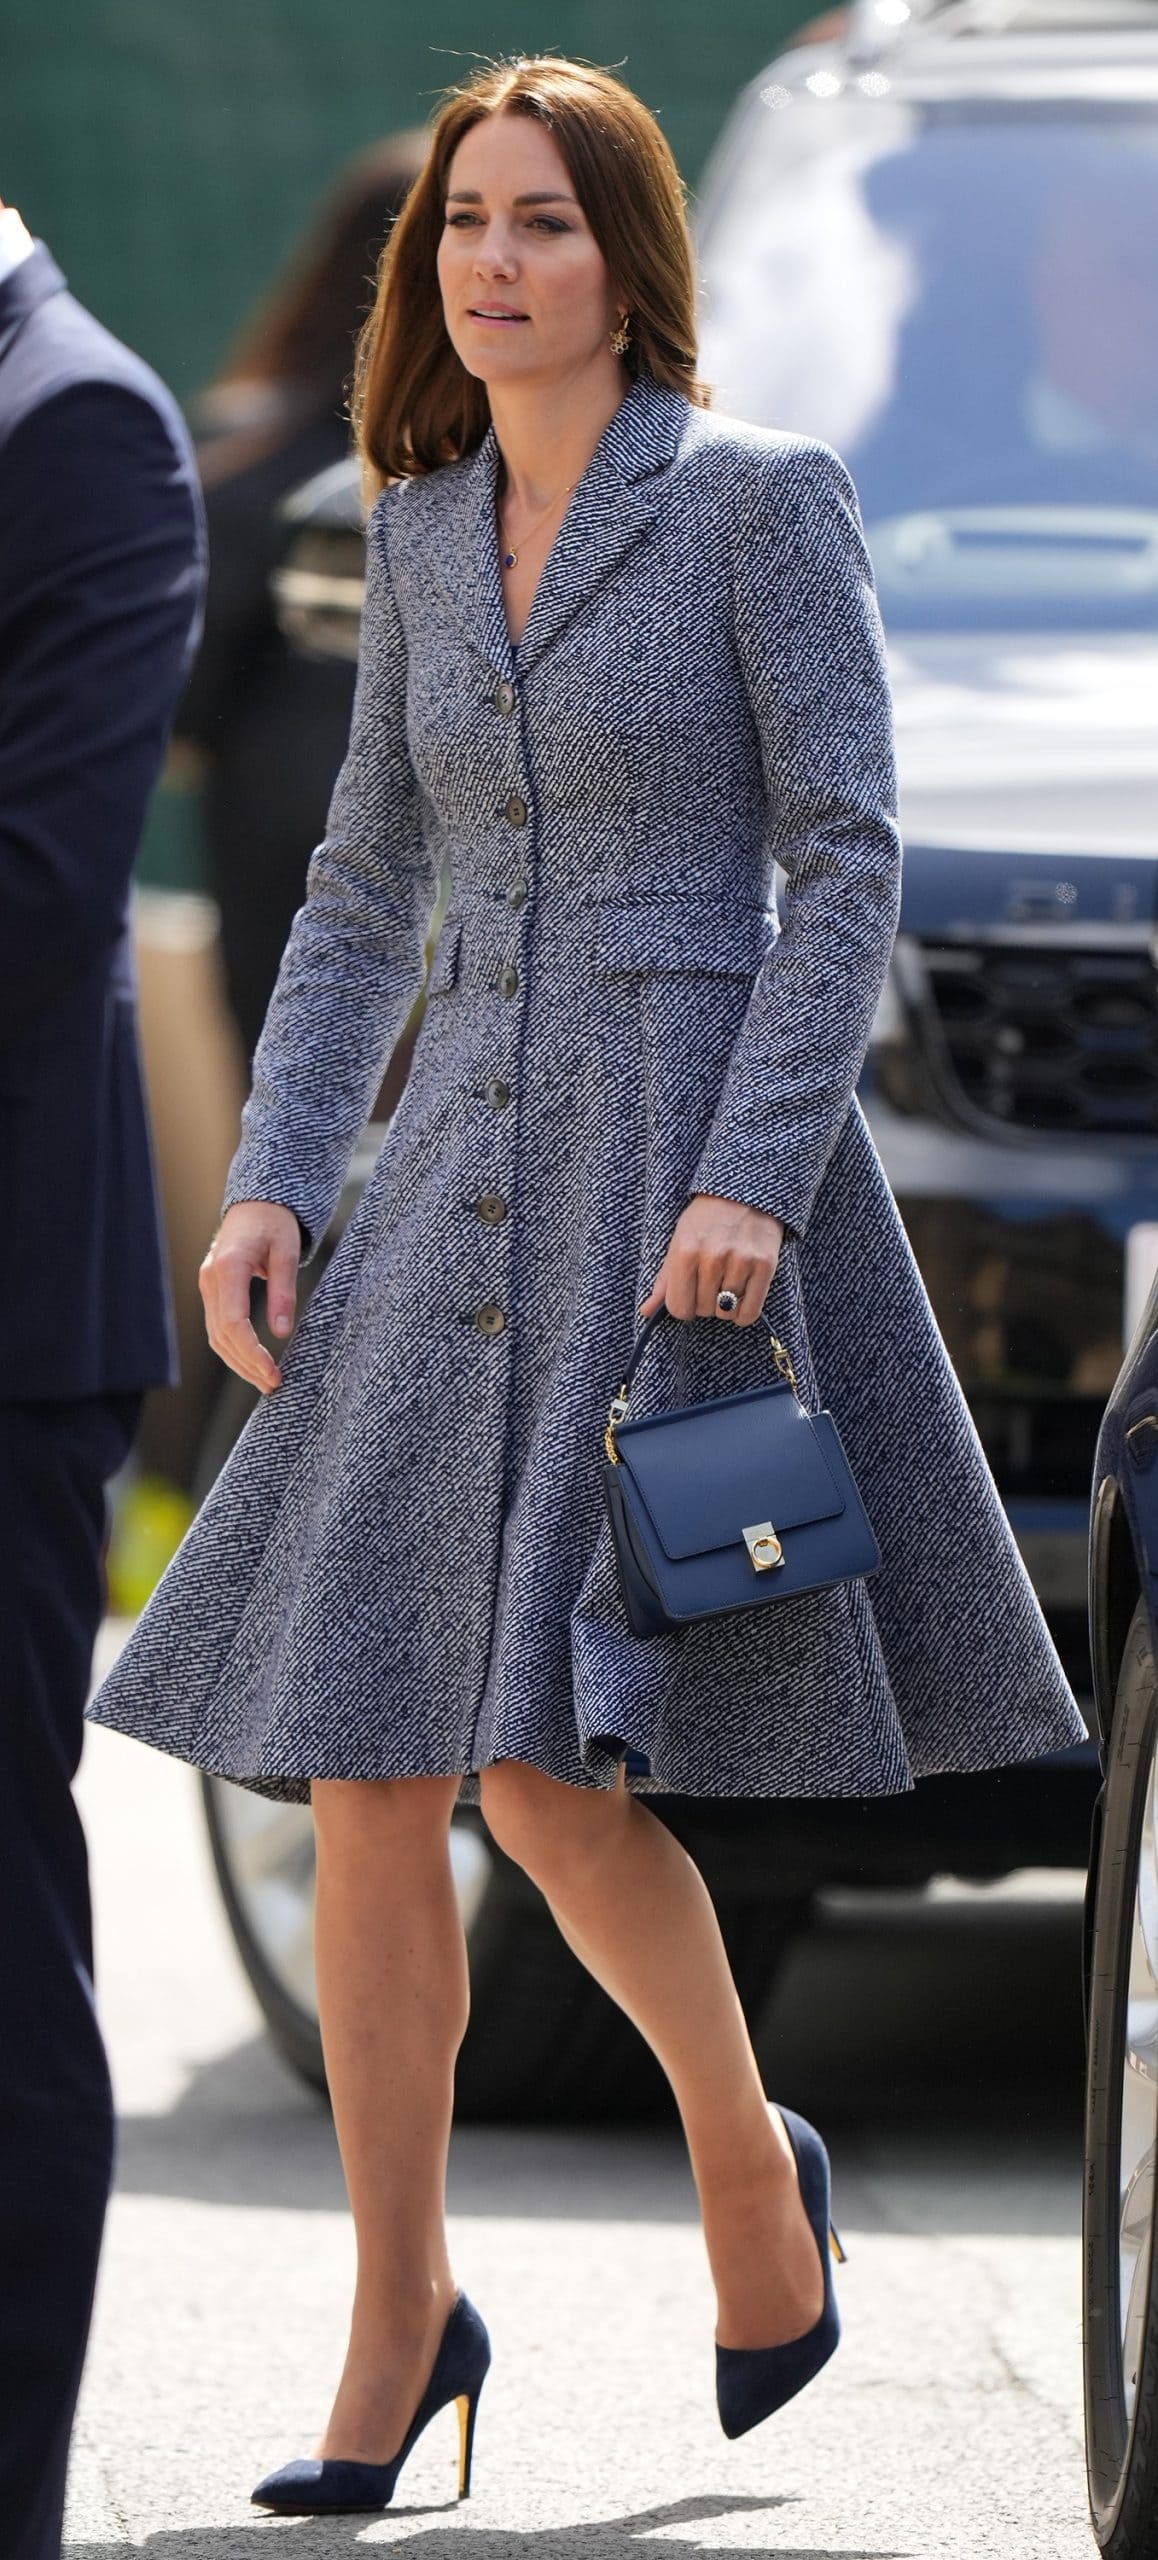 Kate Middleton wears a navy and white Michael Kors coat dress with Rupert Sanderson Malory pumps and a blue grain leather Polène Paris Numéro Sept (Seven) Mini handbag